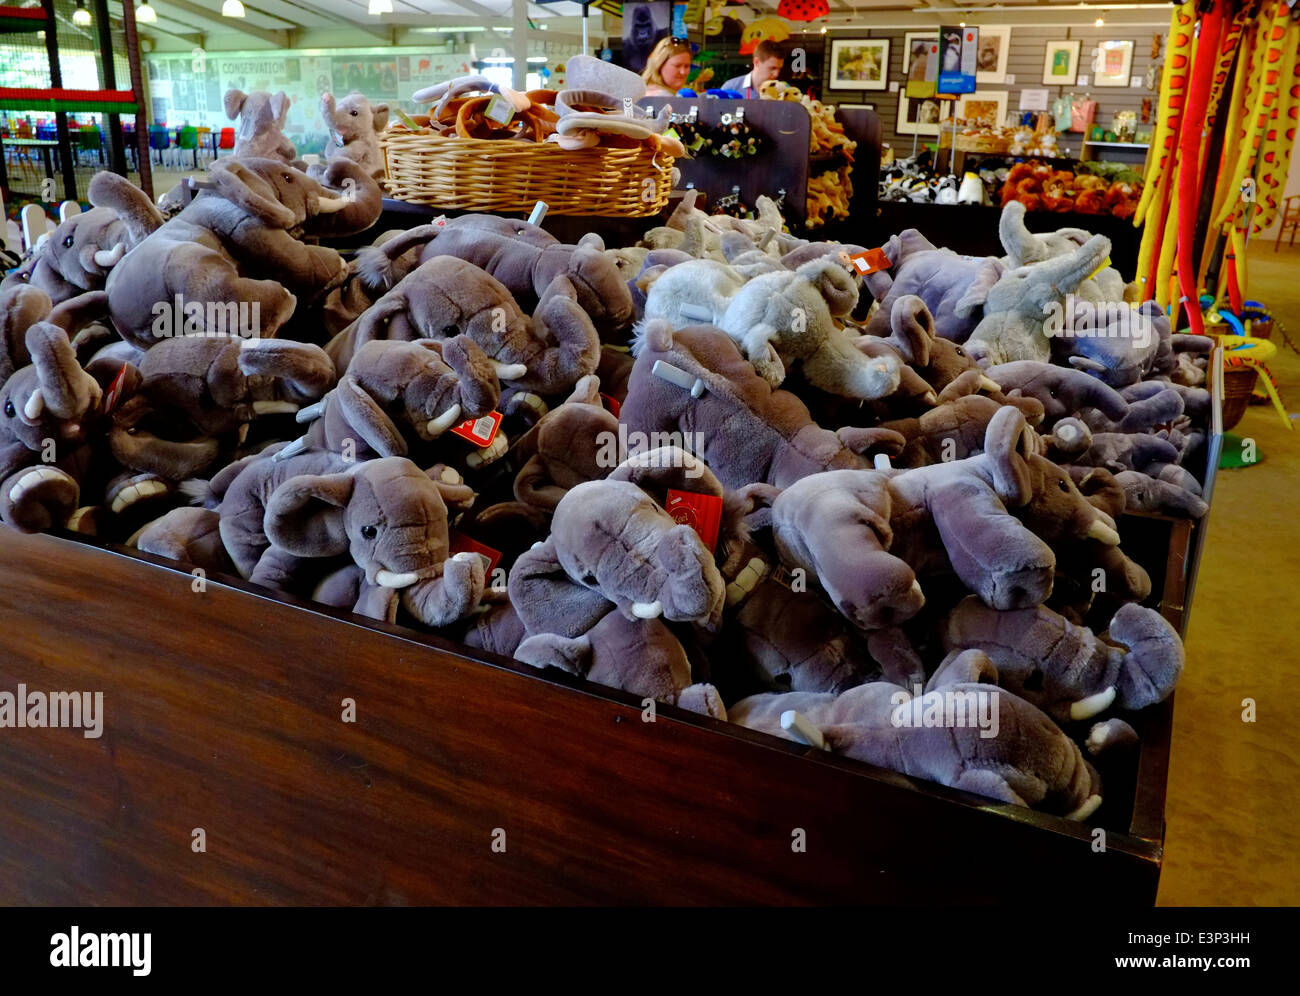 Les éléphants adorable en peluche empilées dans un zoo boutique de cadeaux. Le zoo de Twycross England UK Banque D'Images